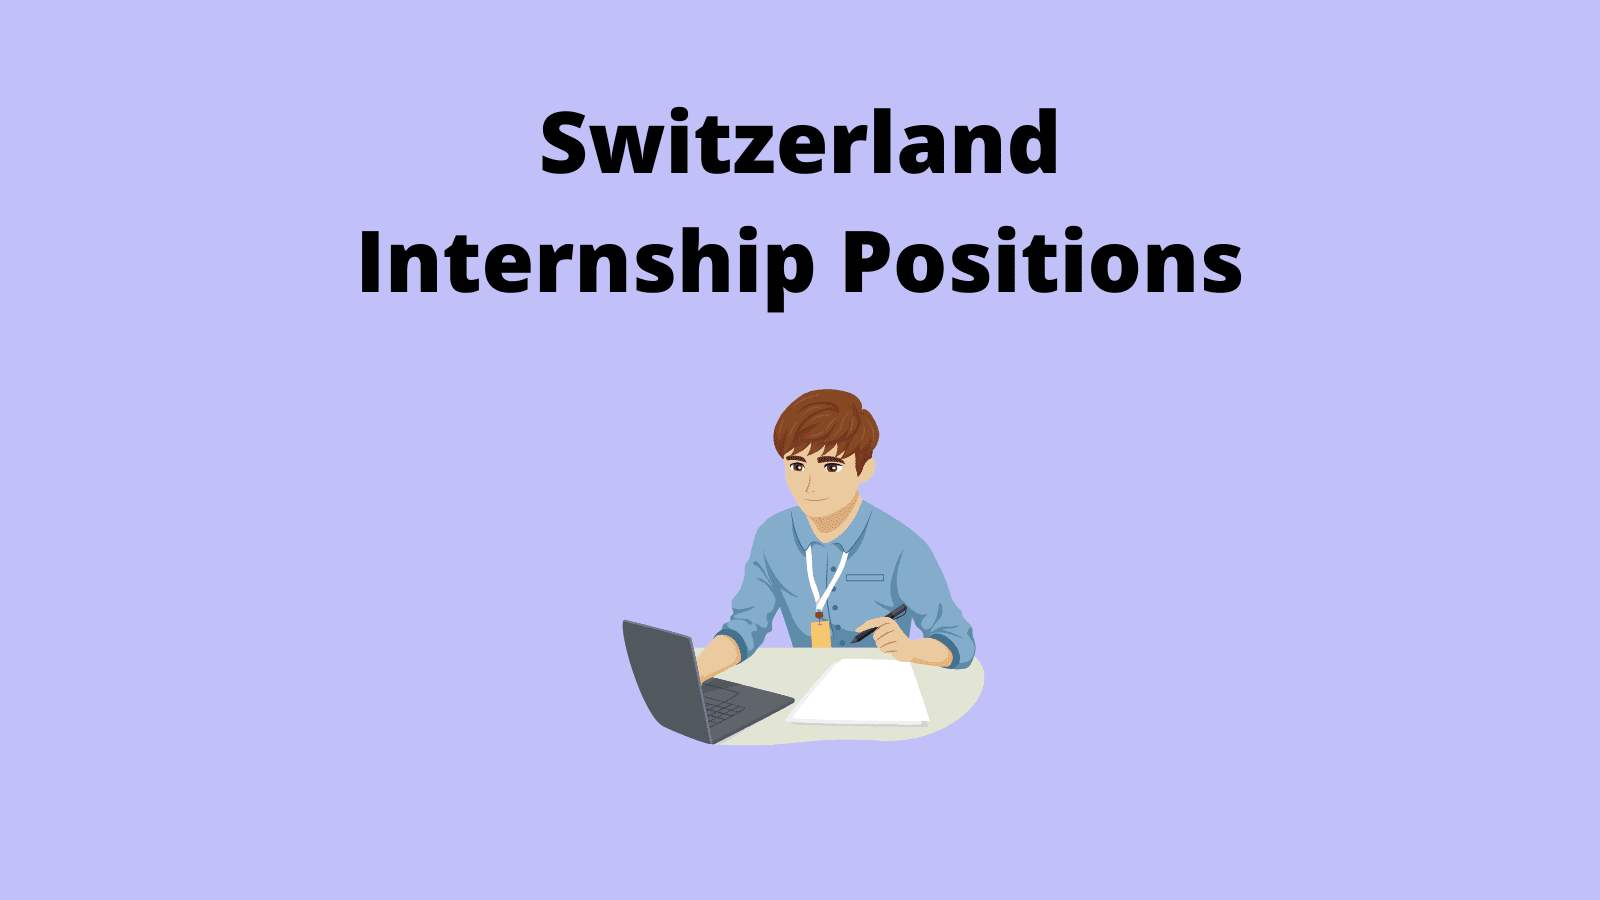 Switzerland Internship Positions